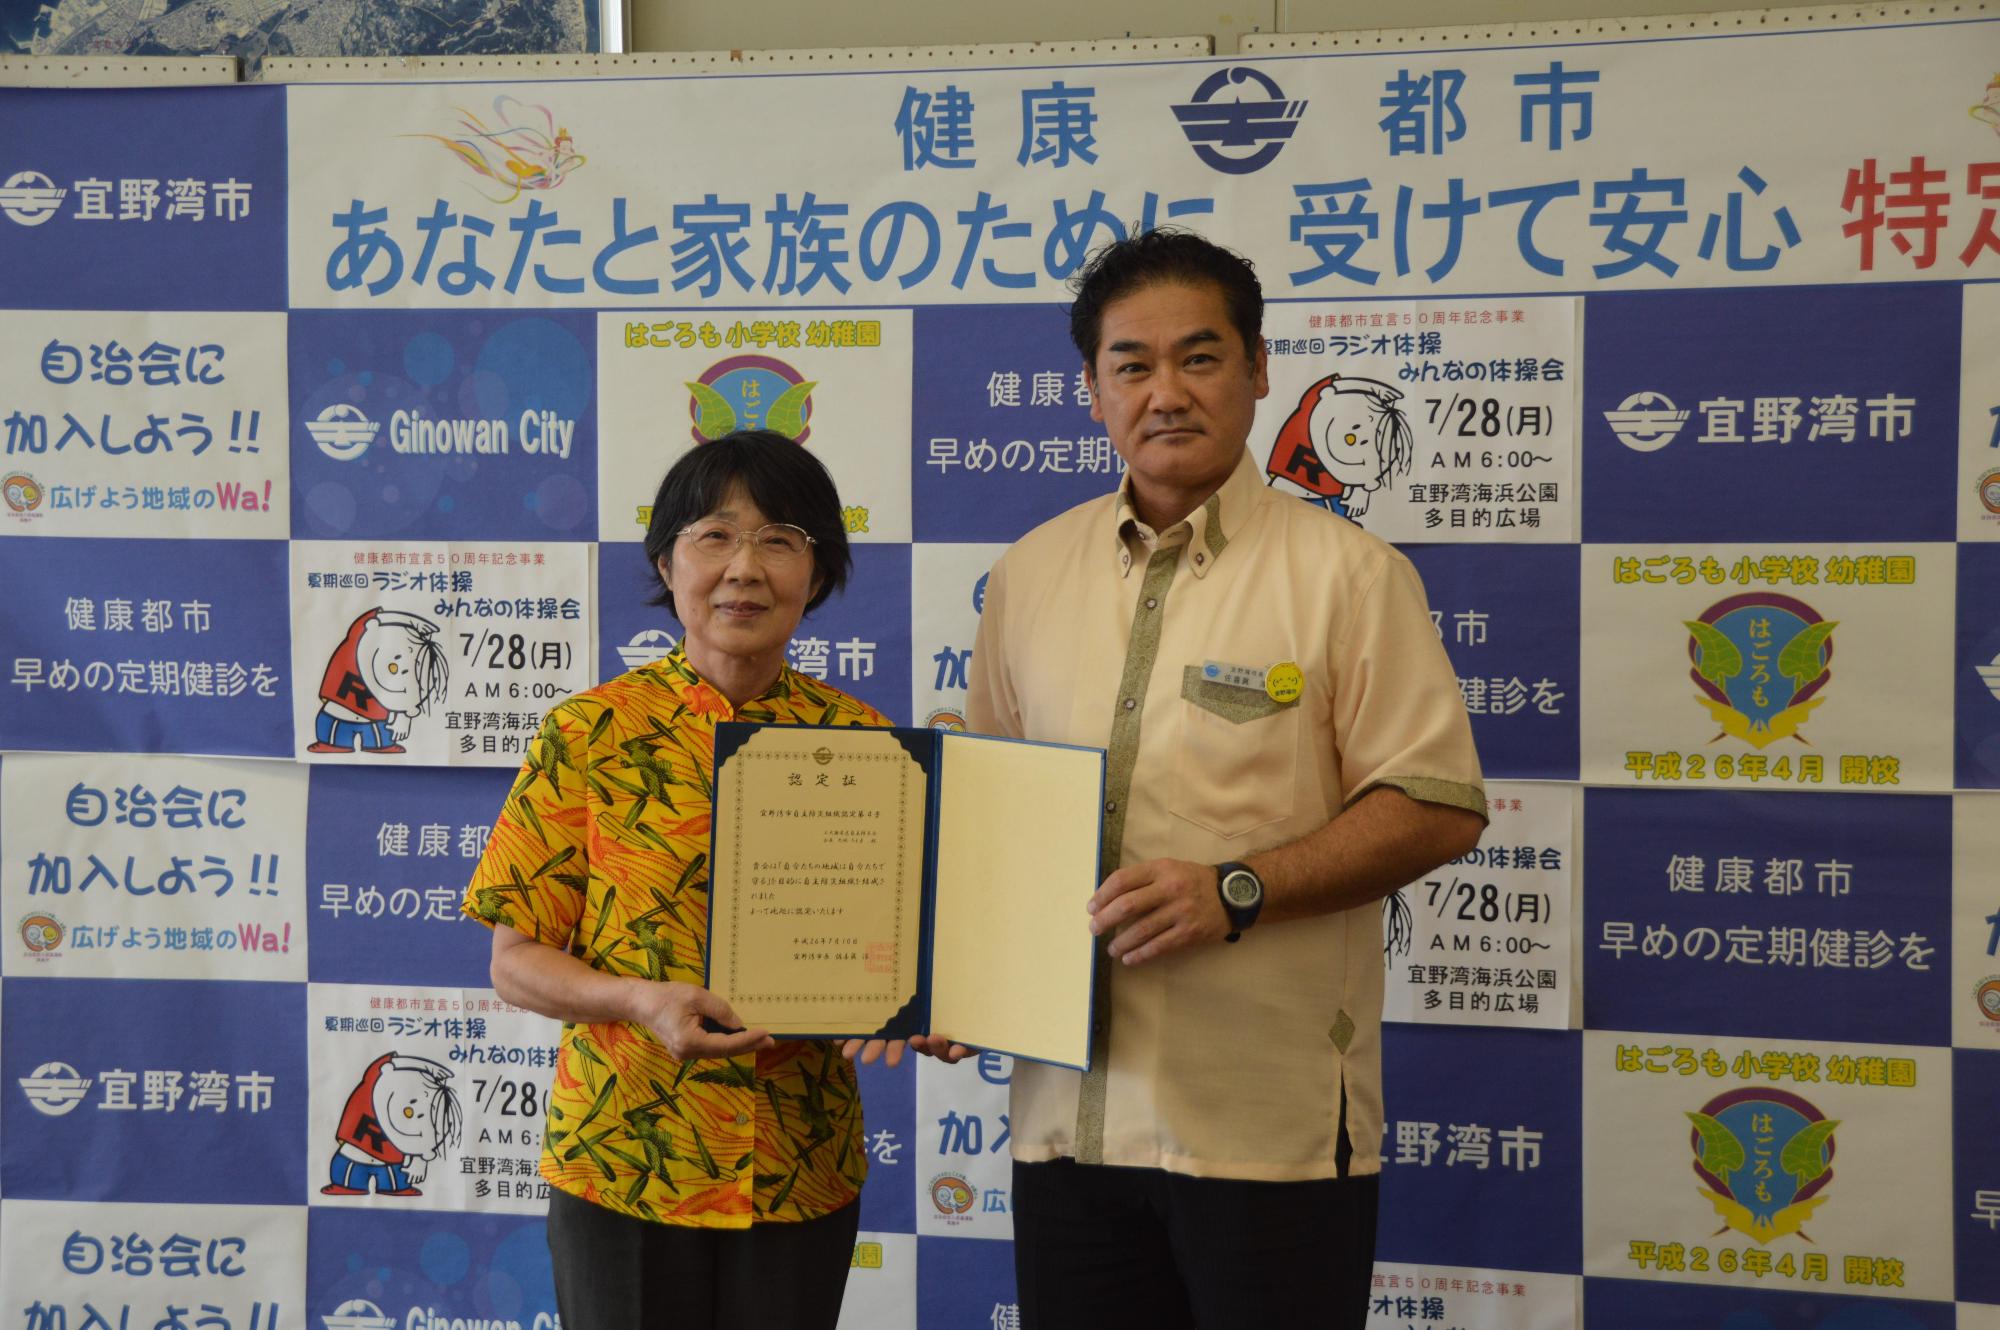 自主防災組織認定証授与式にて上大謝名自治会大城 ちえ子会長と市長が認定書を手に記念撮影している写真